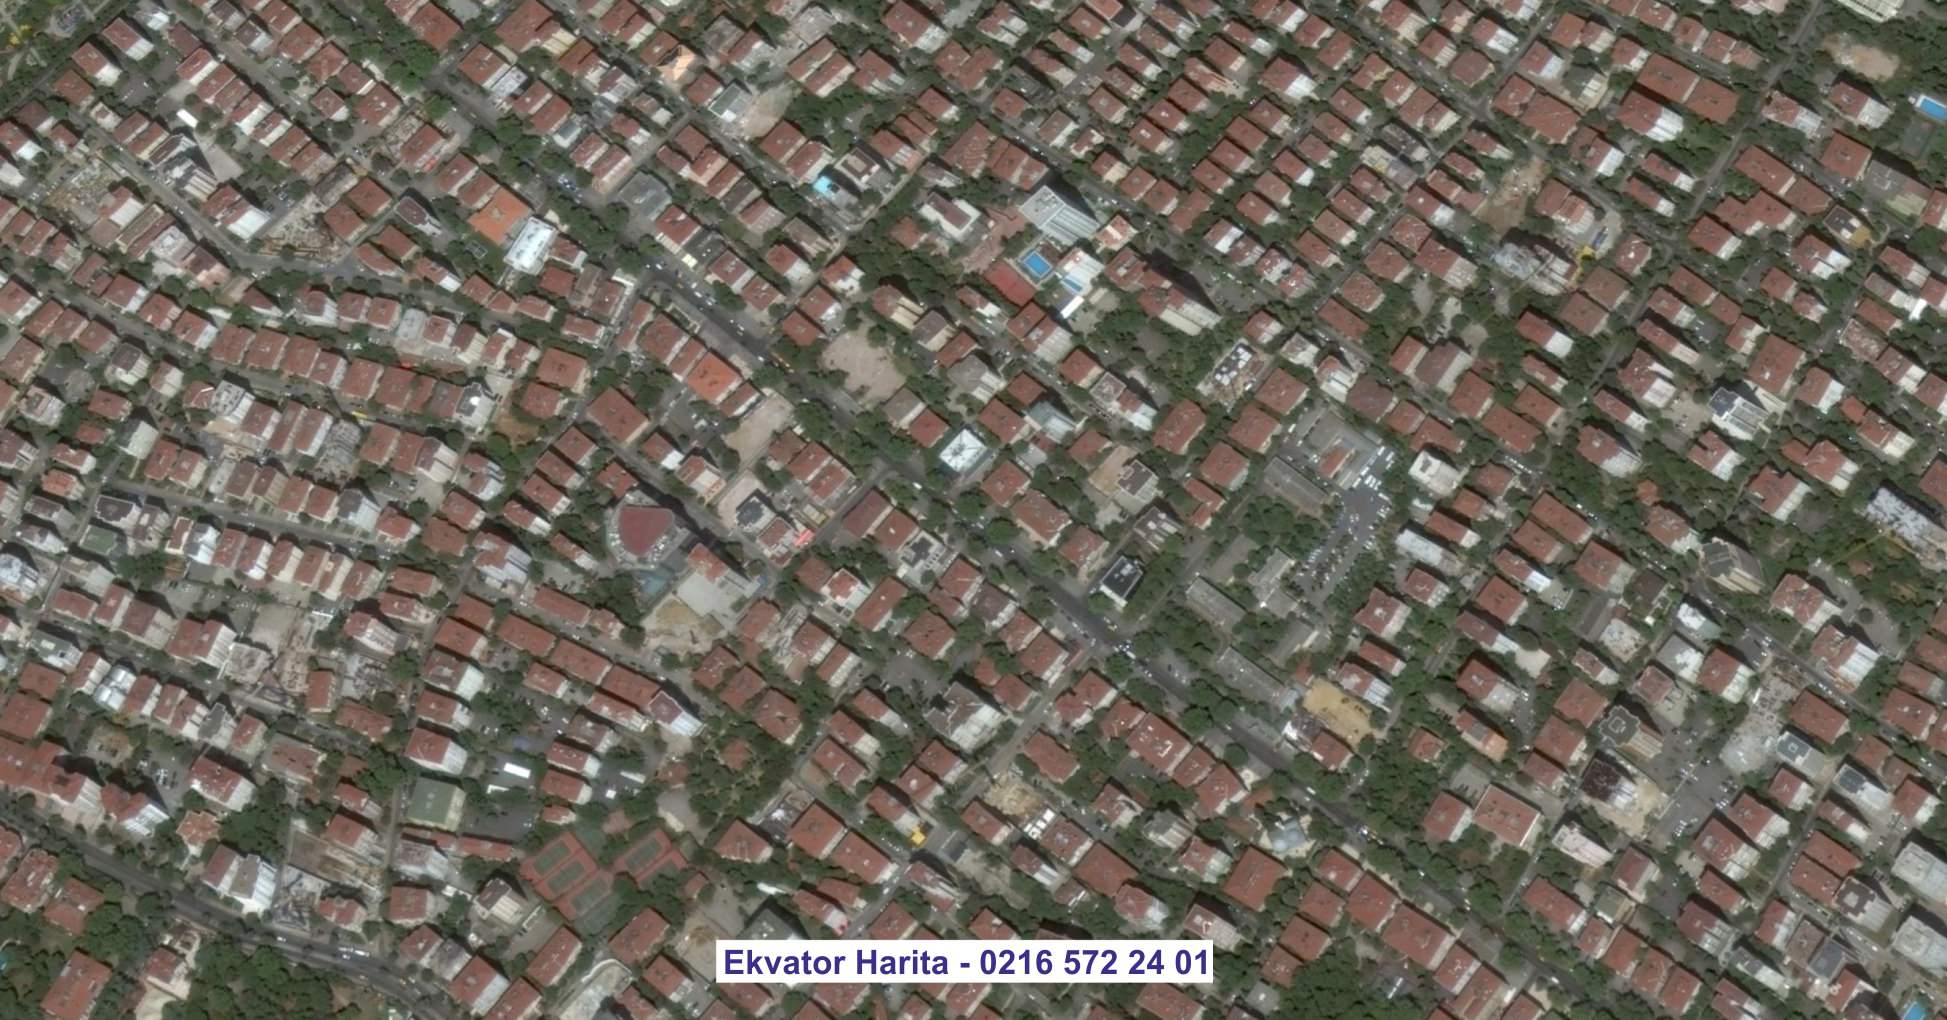 Kastamonu Uydu Görüntüsü Örnek Fotoğrafı